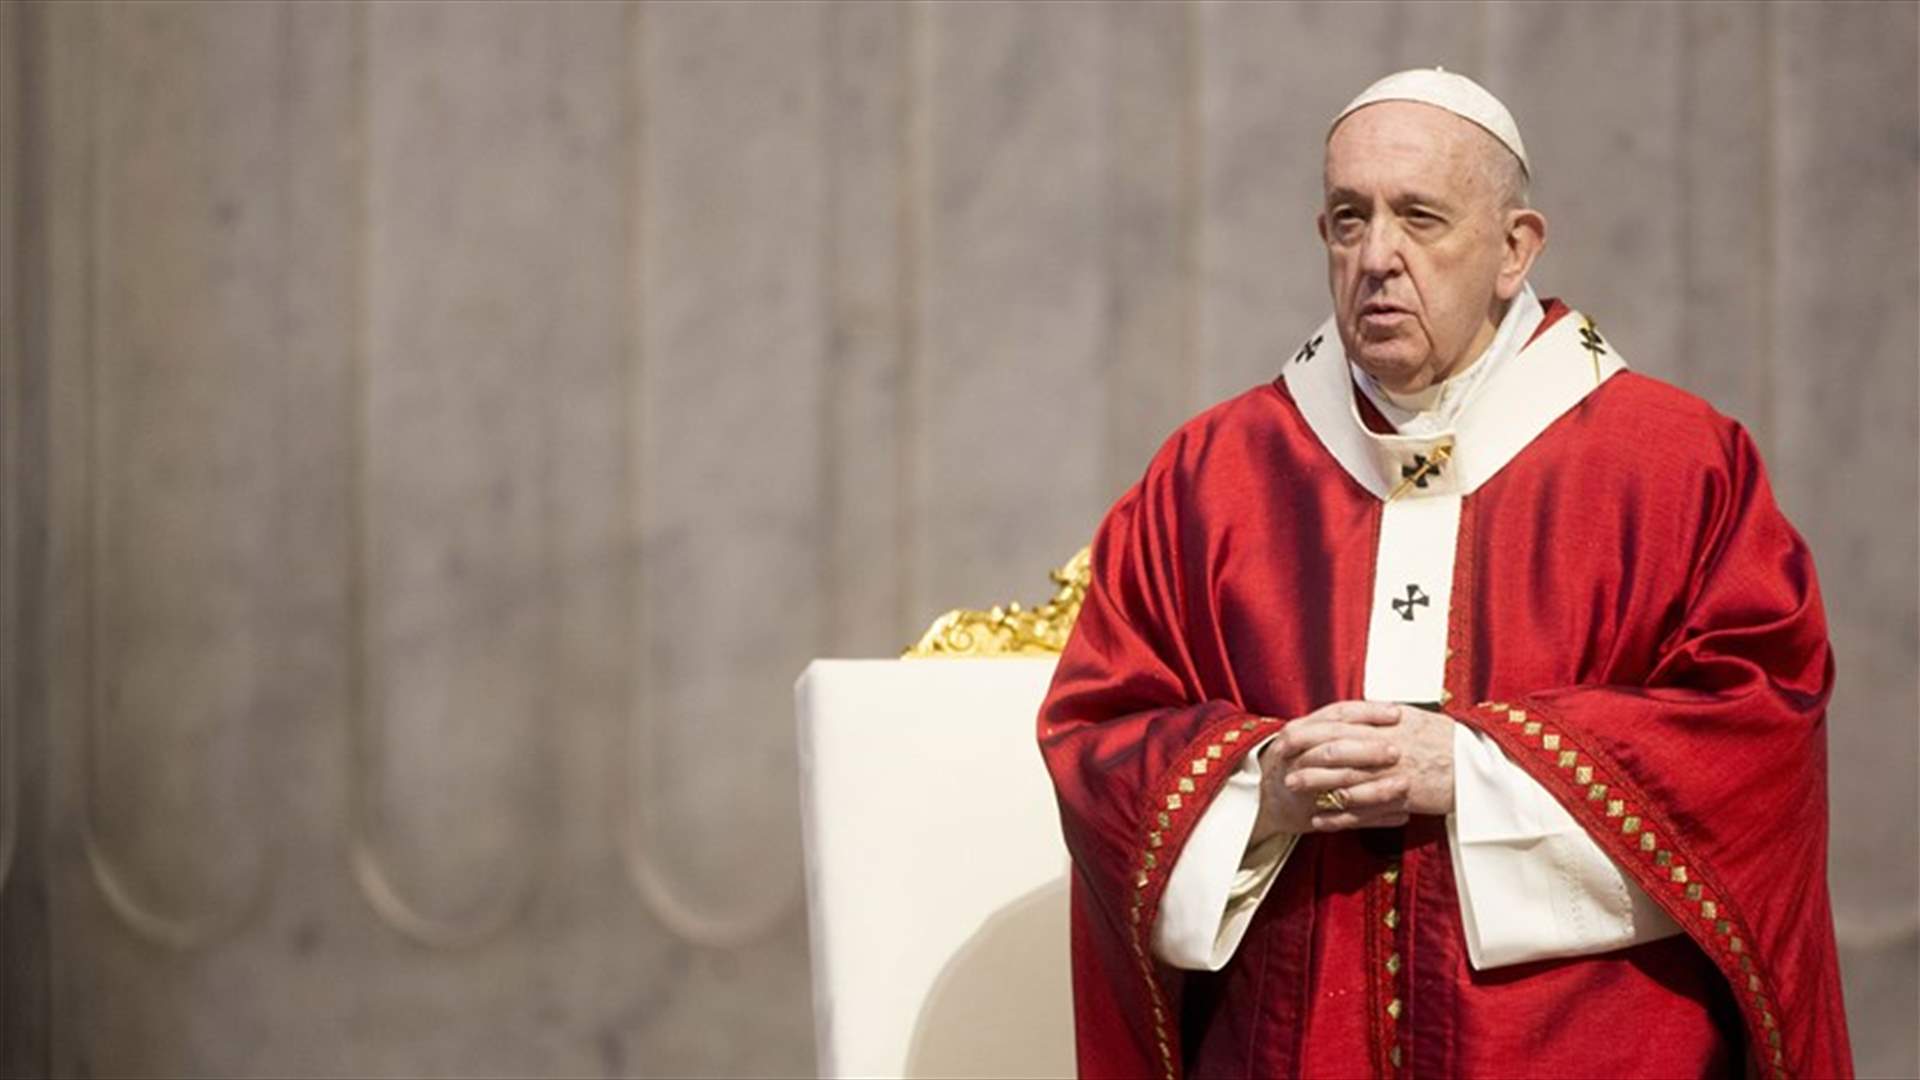 البابا فرنسيس يندد بالعنصرية والعنف في أميركا بعد مقتل جورج فلويد